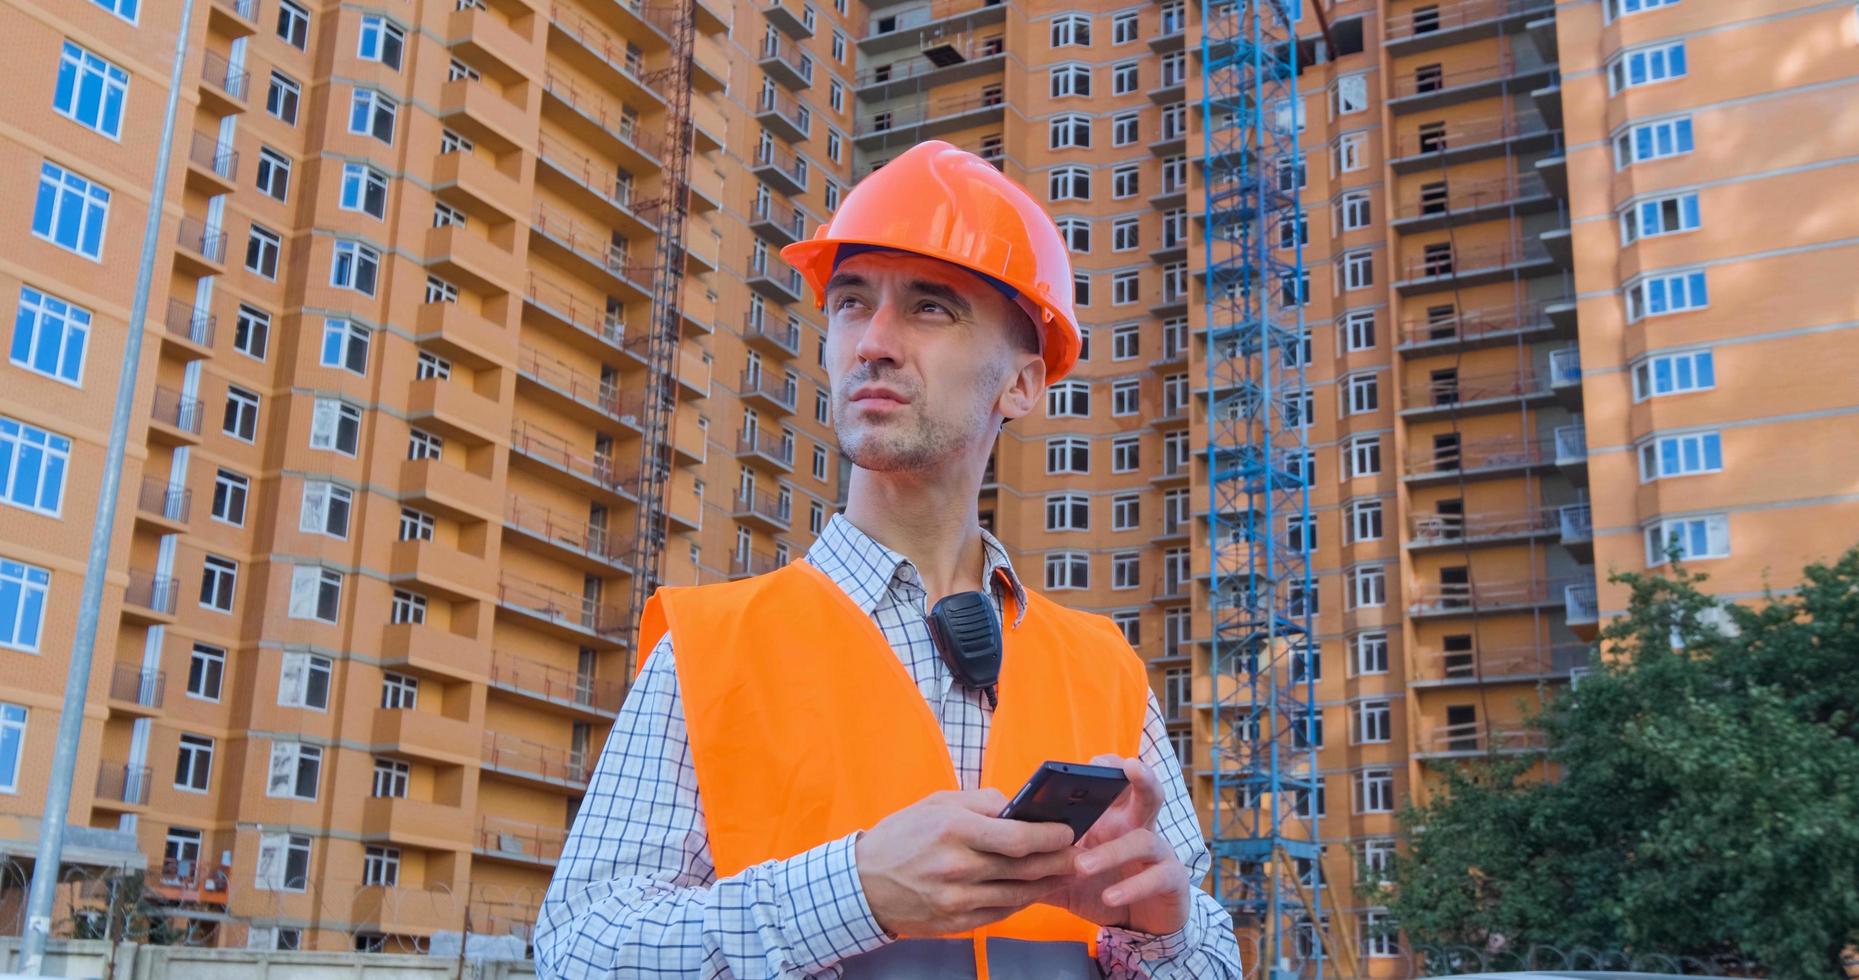 portrait d'un spécialiste de la construction en casque orange et gilet de sécurité contre un grand bâtiment photo